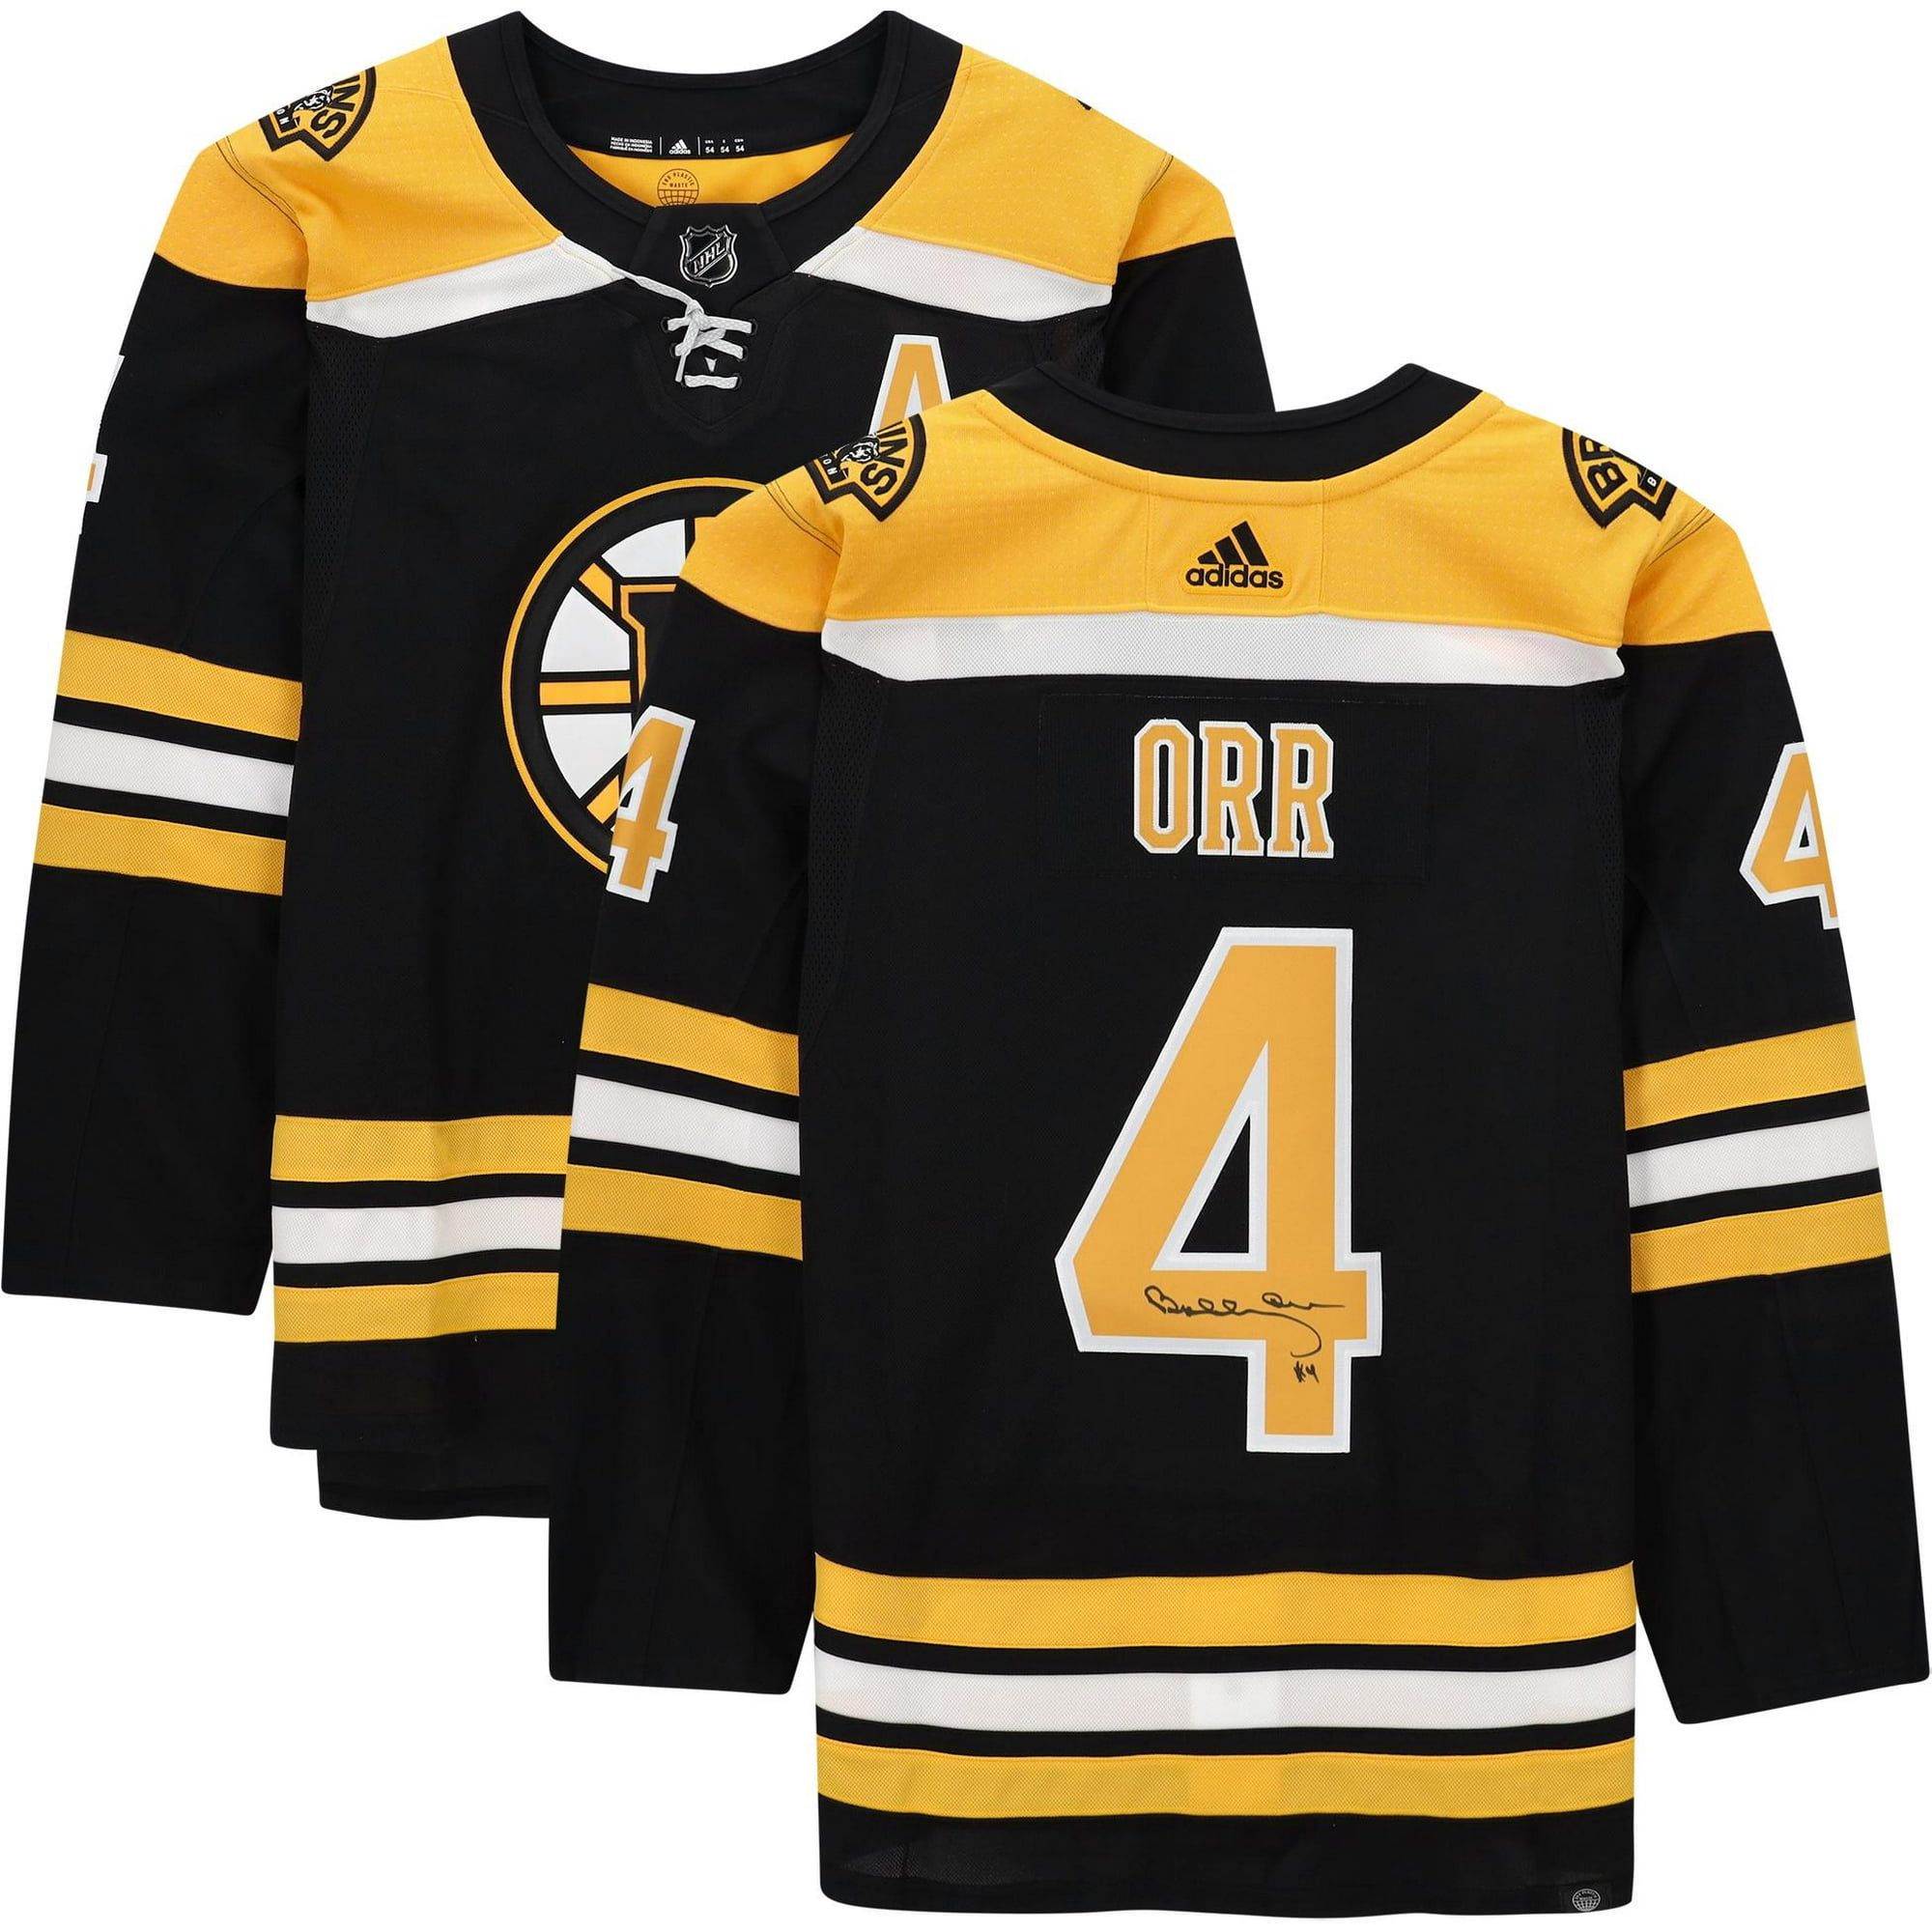 Lids Bobby Orr Boston Bruins Fanatics Authentic Autographed White